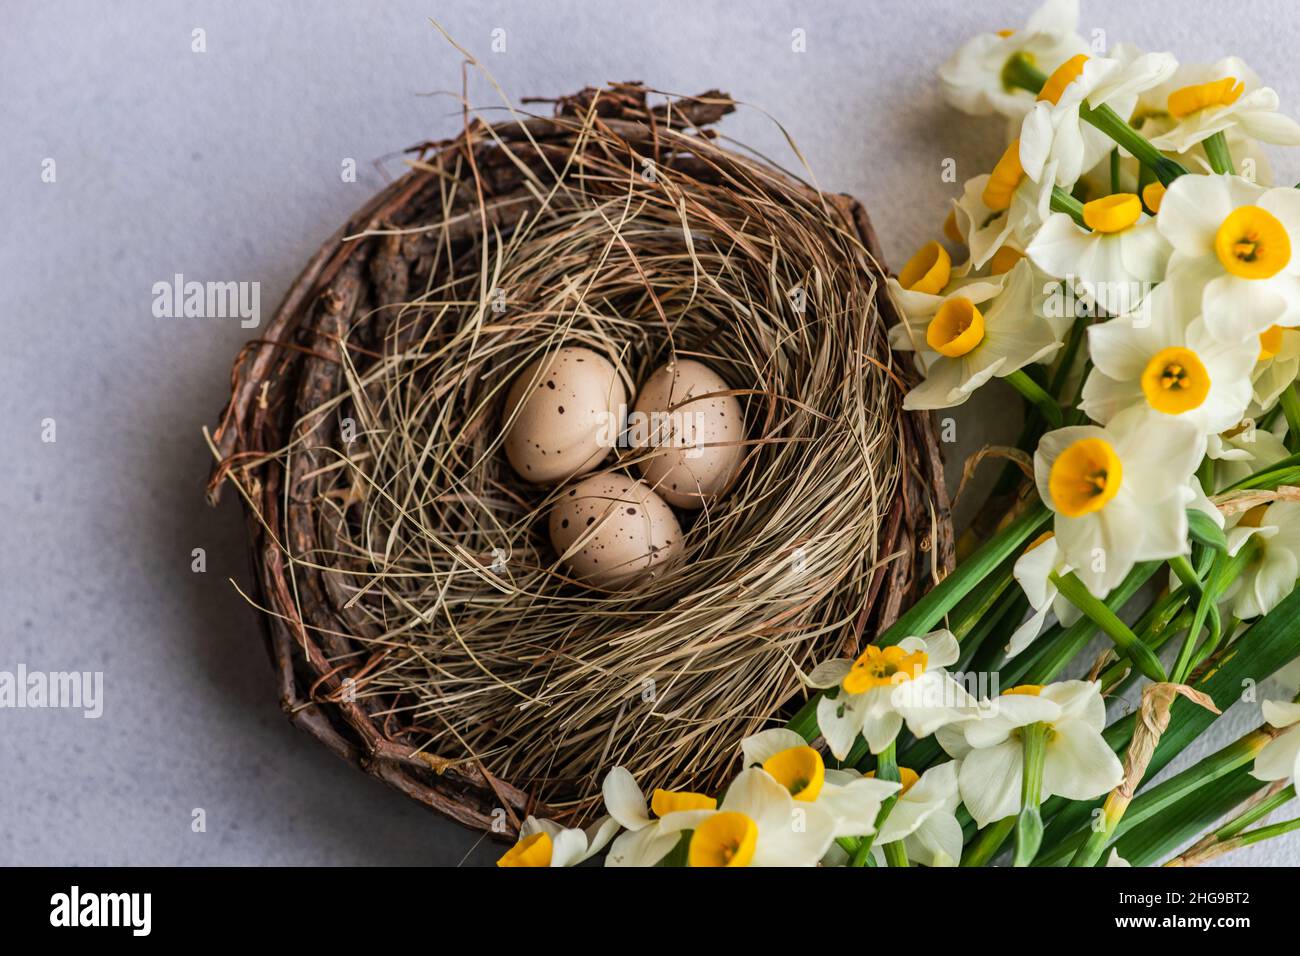 Narcisse fleurit près de trois oeufs dans un nid d'oiseau Banque D'Images